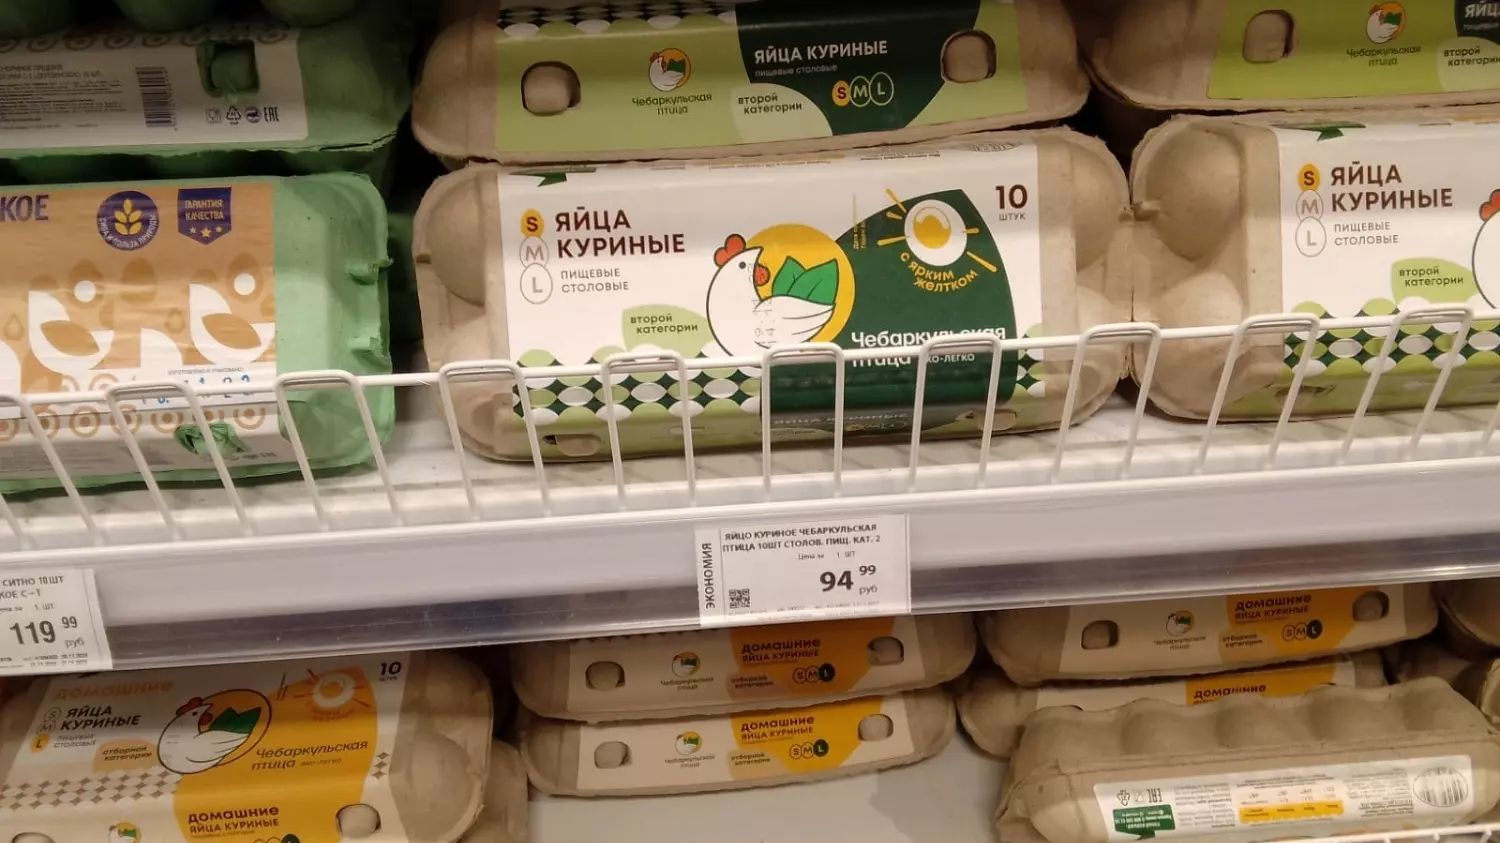 Яйца С2 стоят в челябинском магазине 94, 99 рубля